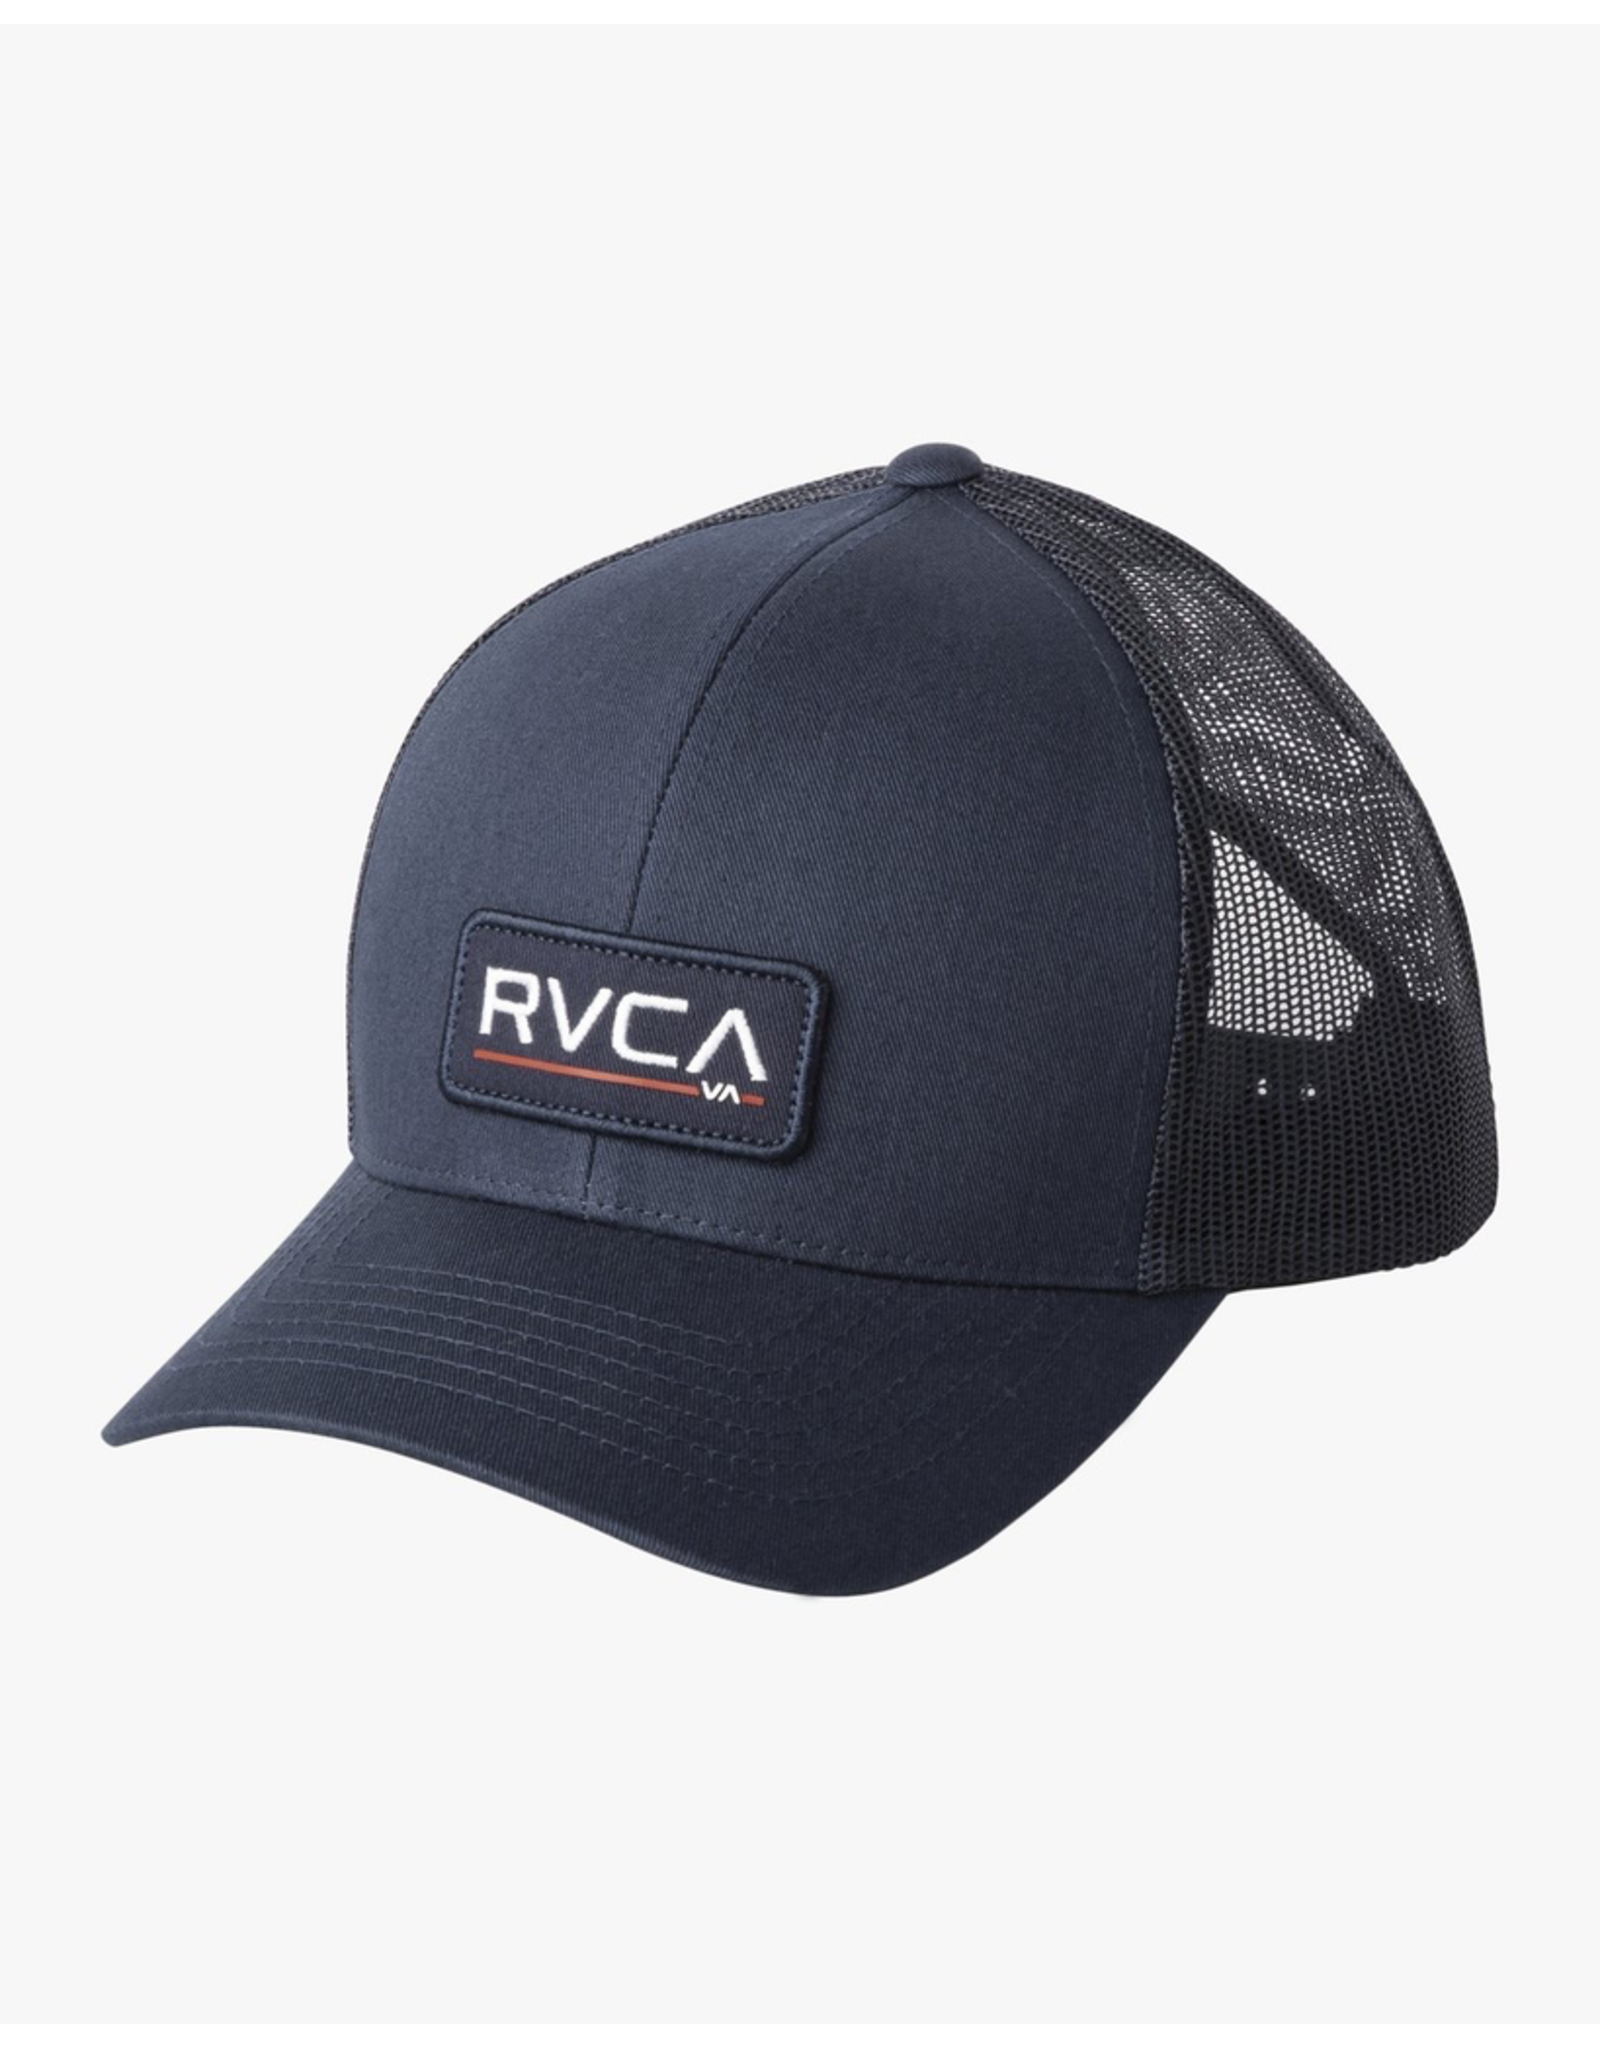 RVCA TICKET III TRUCKER HAT - NAVY